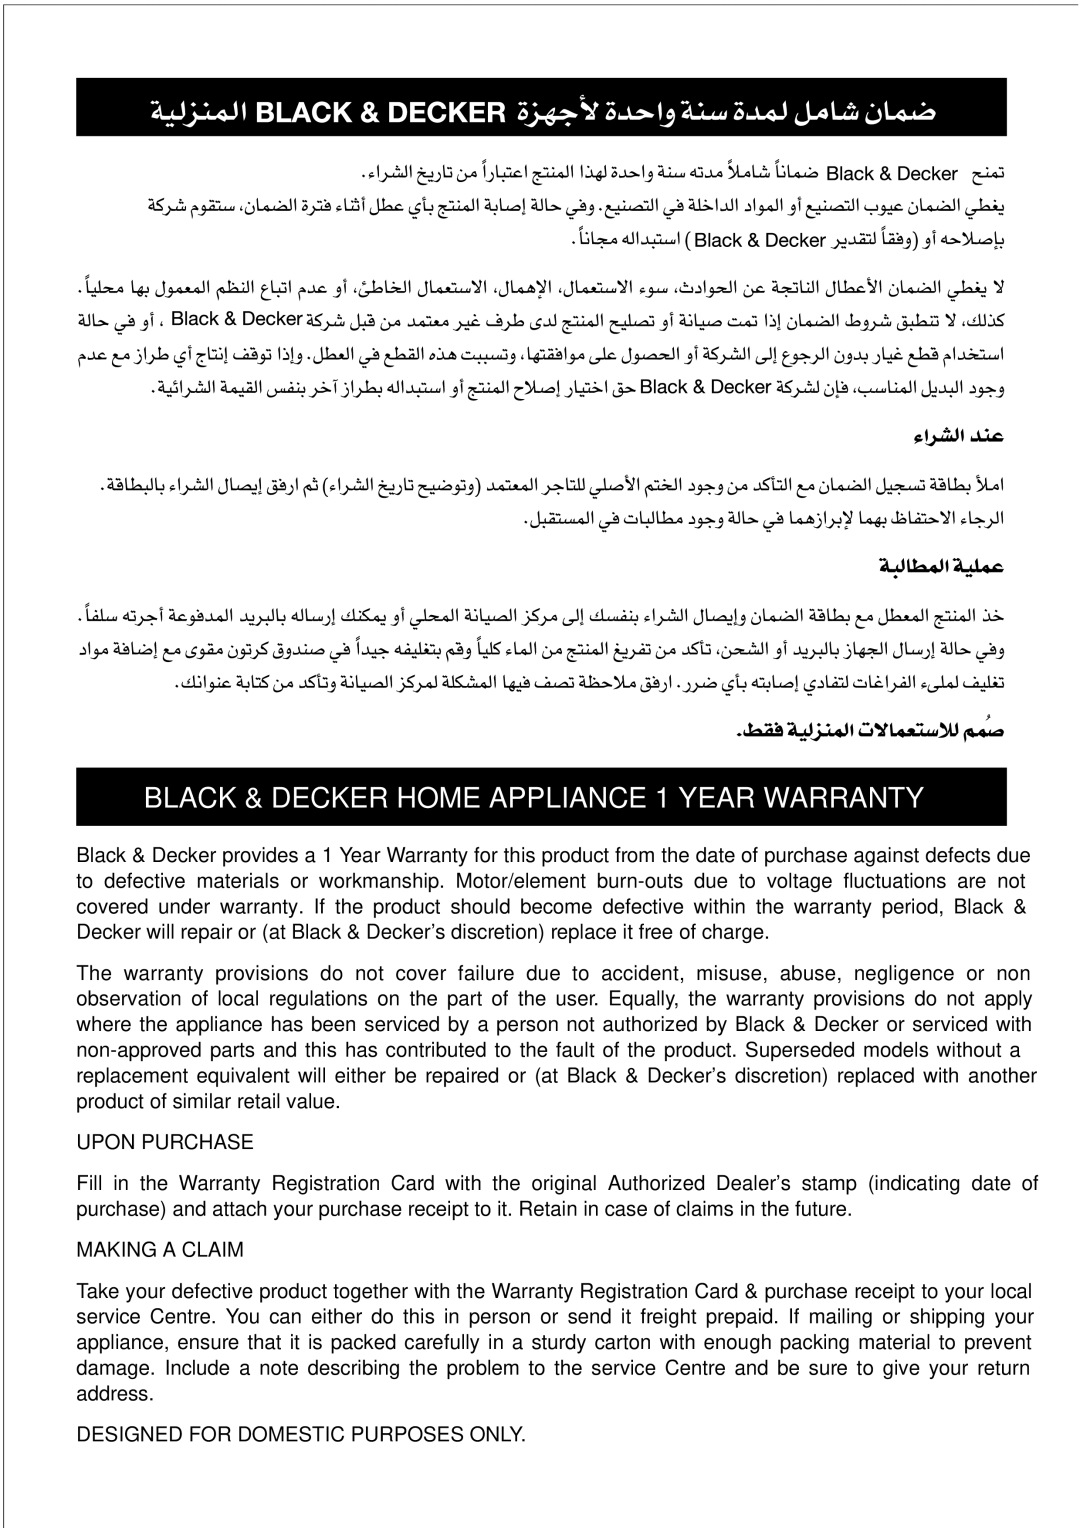 Black & Decker VM425 manual Black & Decker Home Appliance 1 Year Warranty 